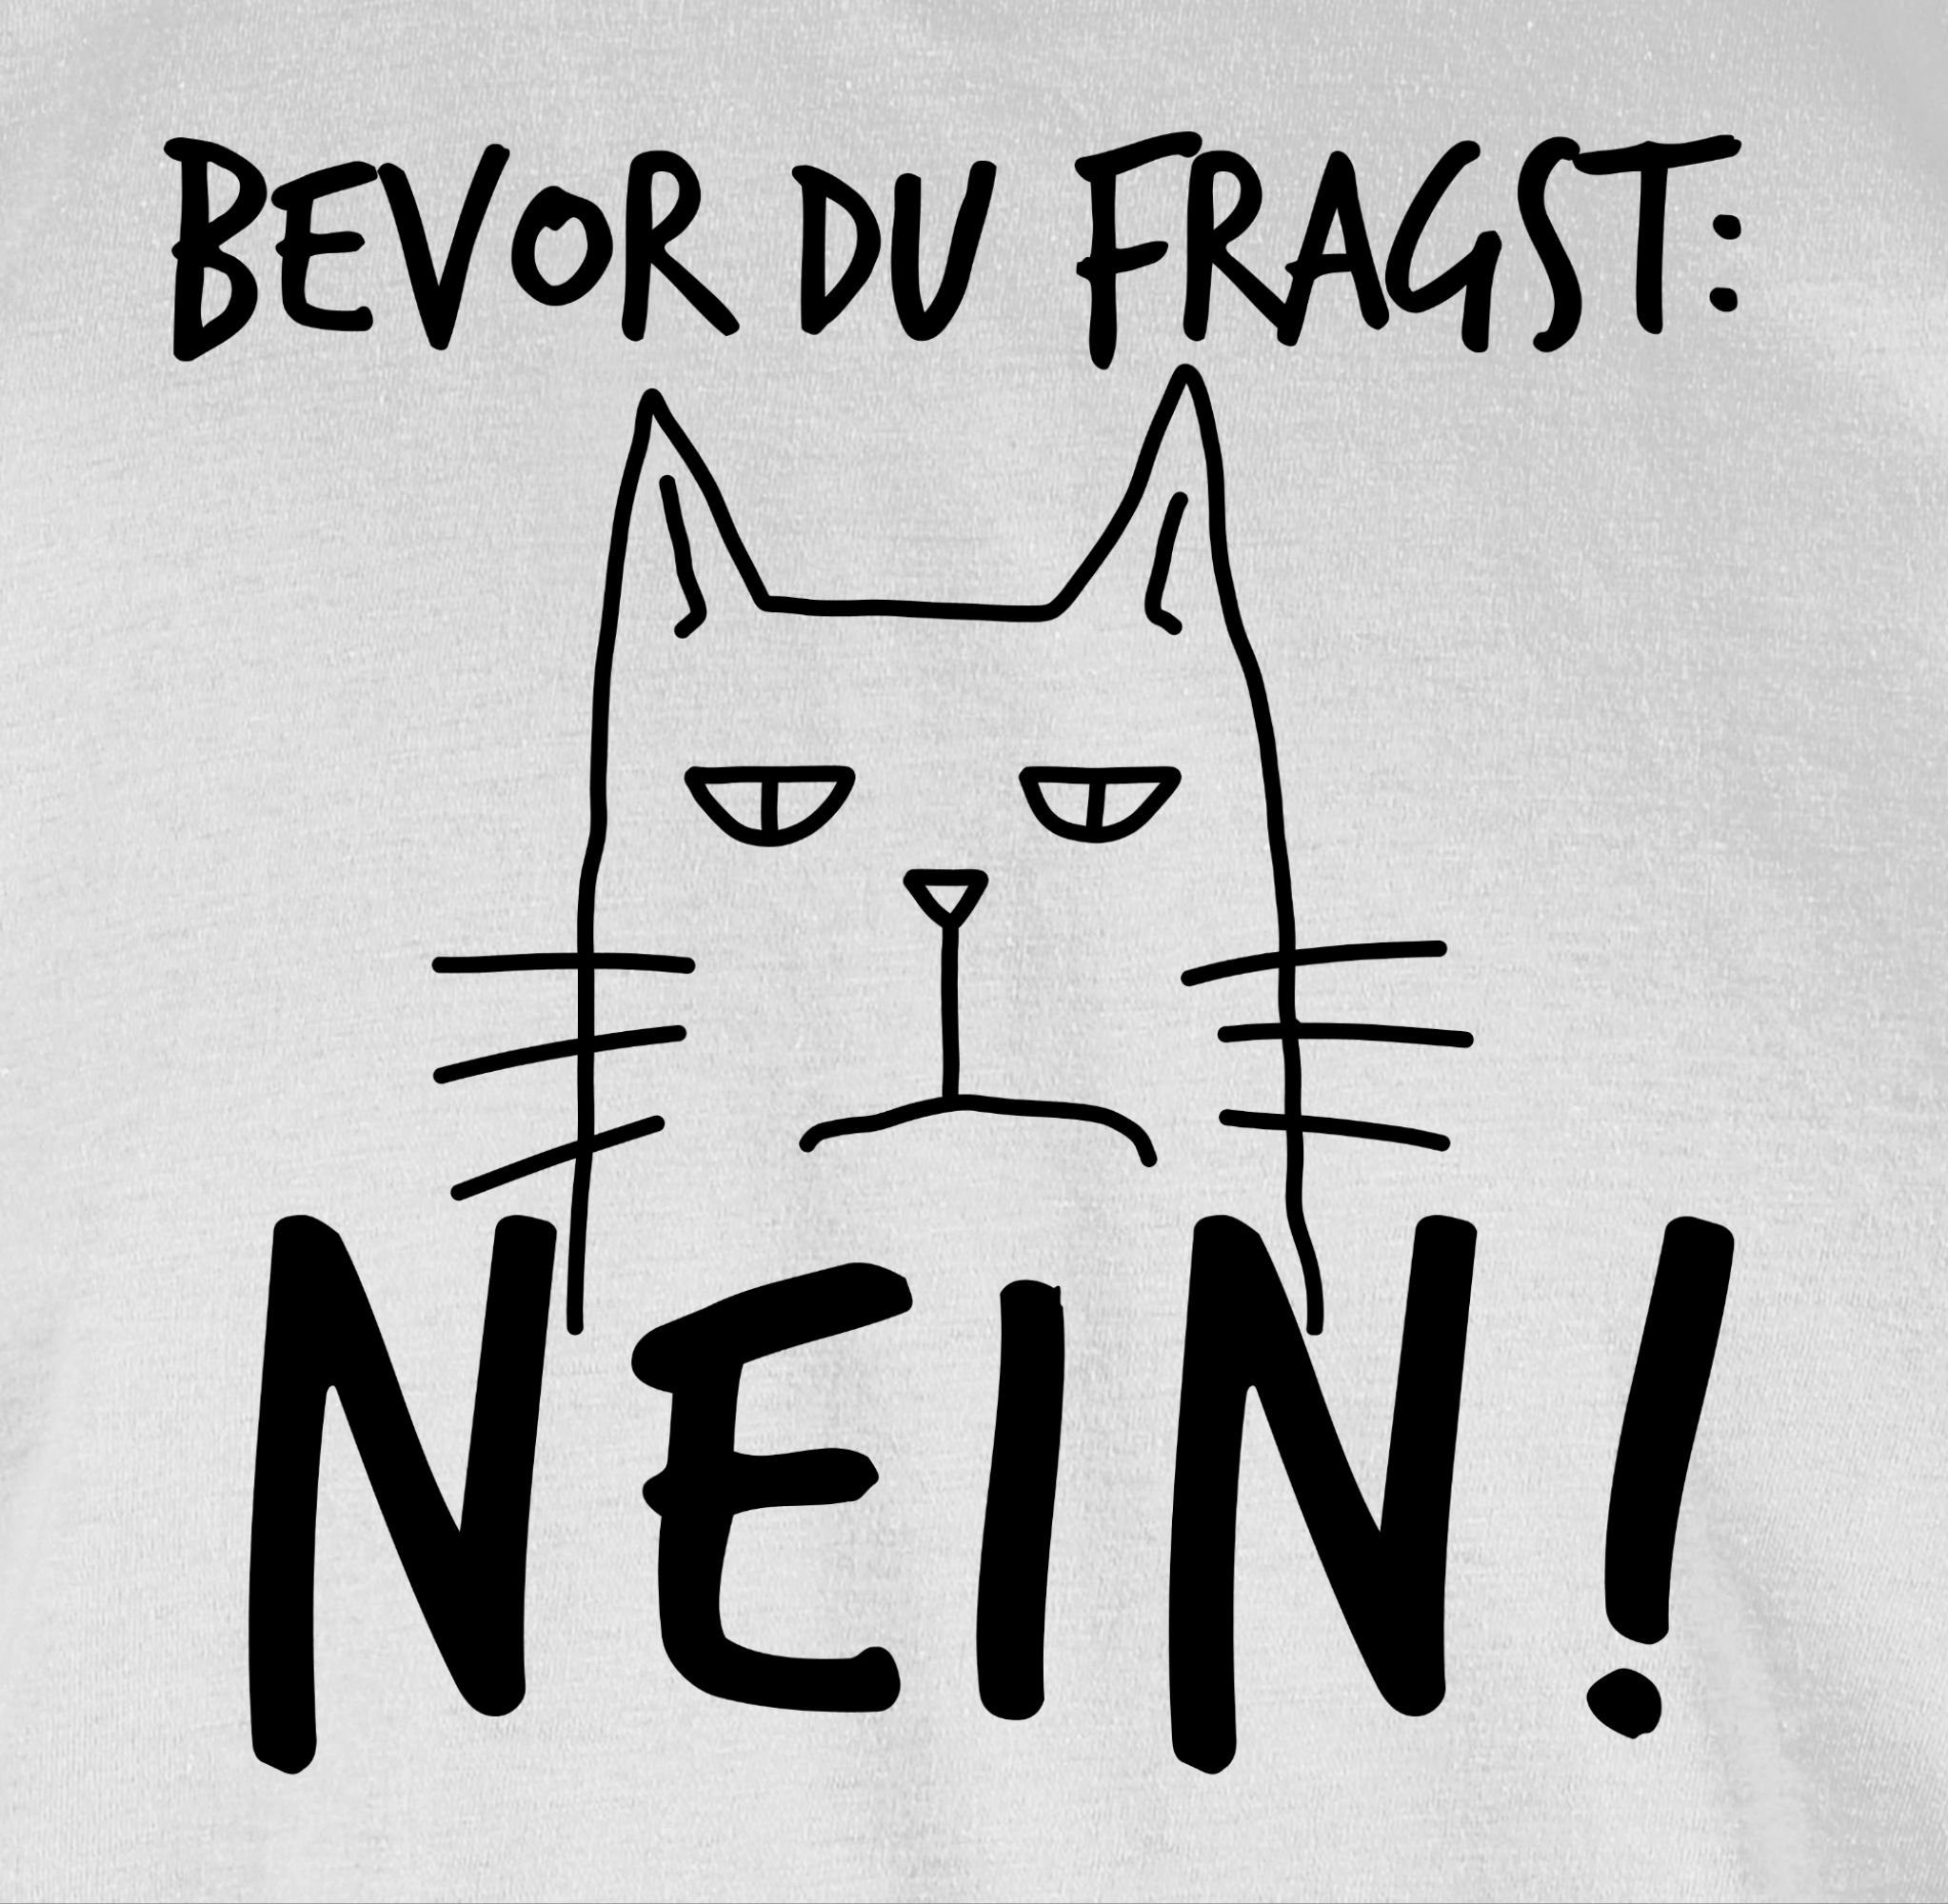 Shirtracer T-Shirt Bevor Sarkasmus Ironie - Nein - fragst Weiß Statement 03 Katze Spruch Sprüche Witzige mit Spruch du Lustig